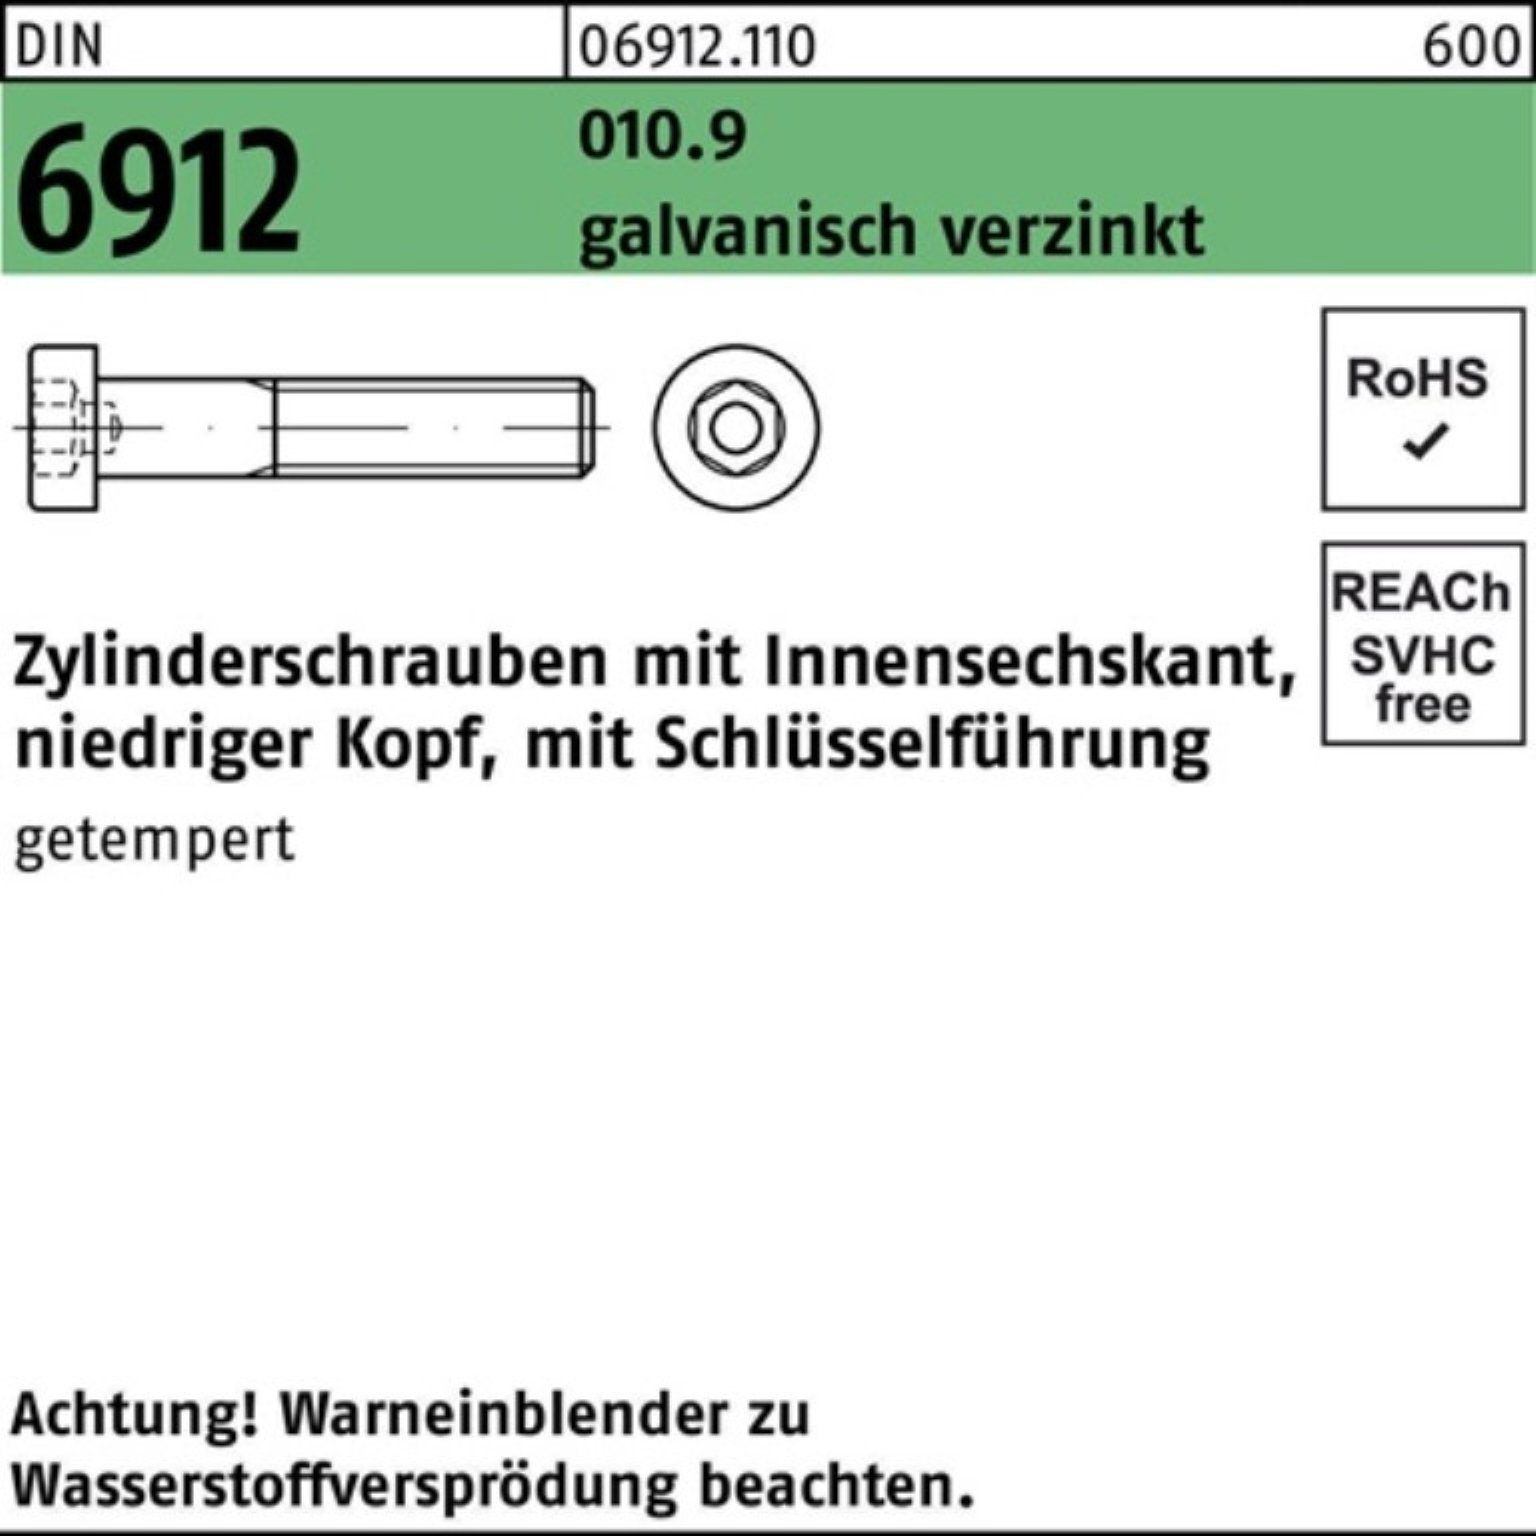 Pack Zylinderschraube Innen-6kt Reyher 010.9 Zylinderschraube galv.verz. M6x16 6912 500er DIN